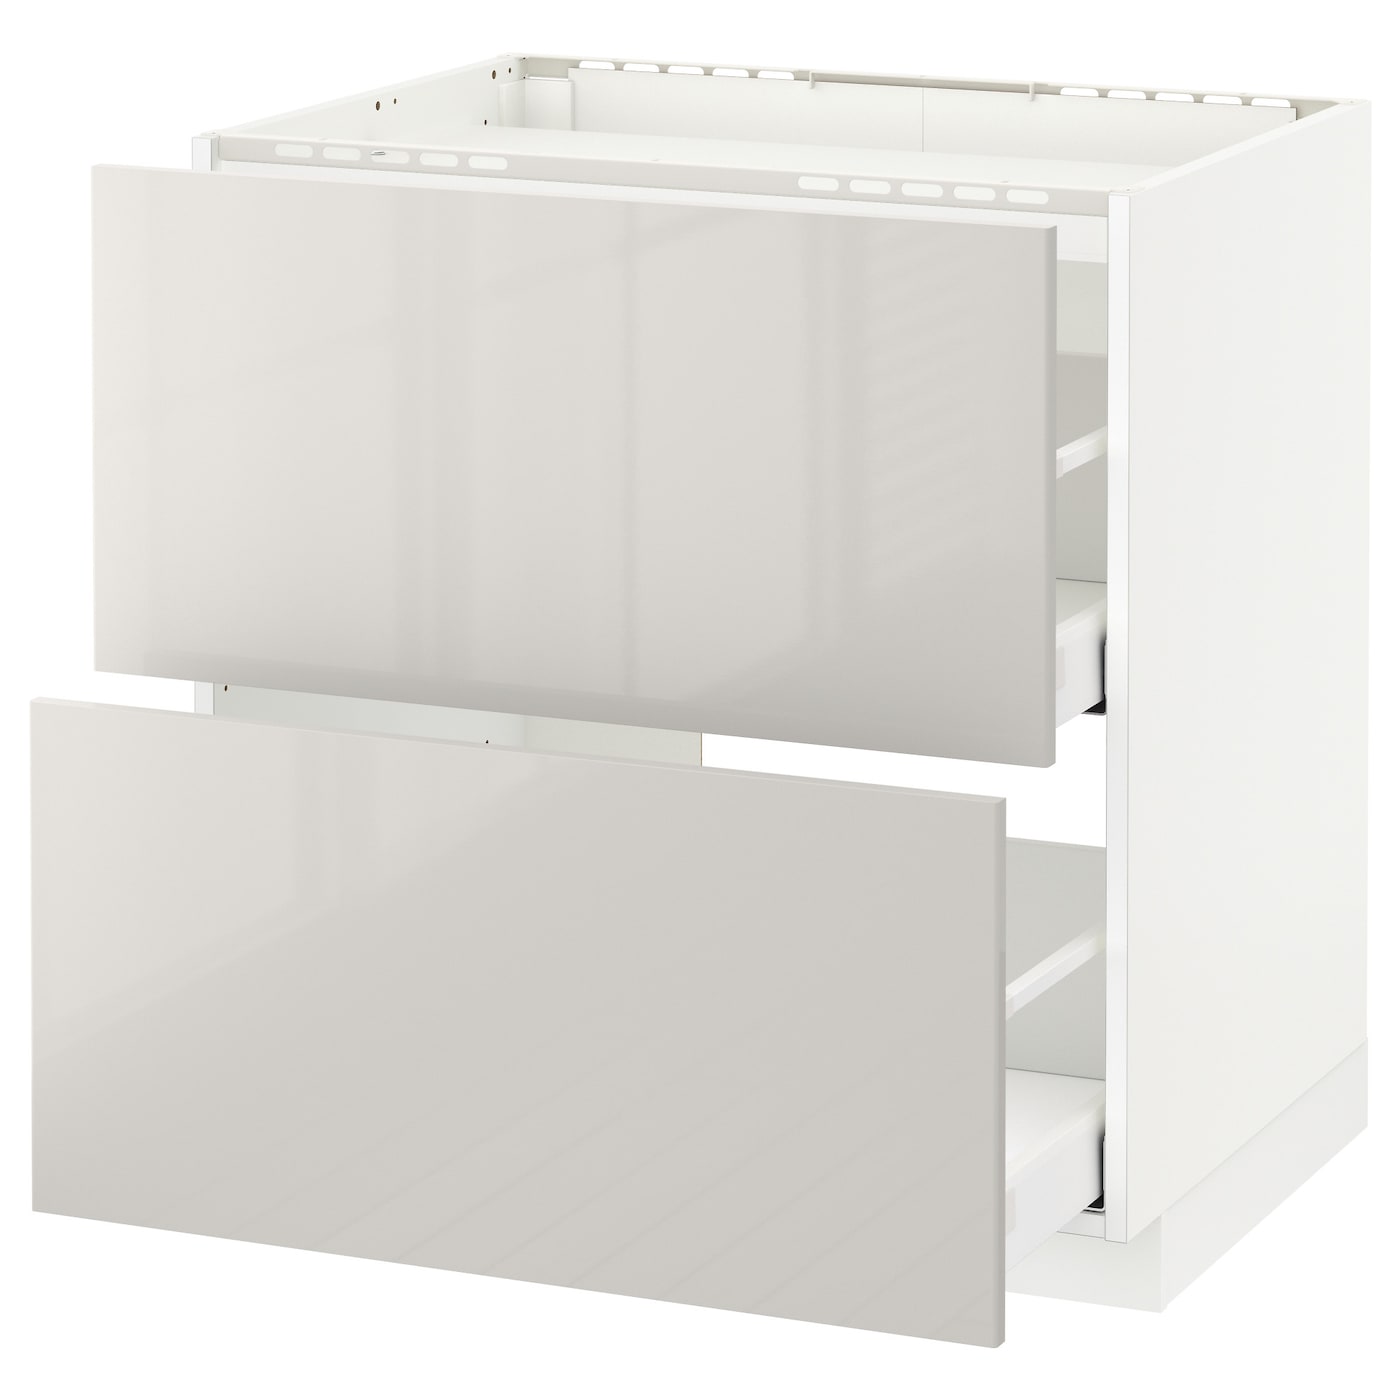 Напольный шкаф  - IKEA METOD MAXIMERA, 88x61,8x80см, белый/светло-серый, МЕТОД МАКСИМЕРА ИКЕА